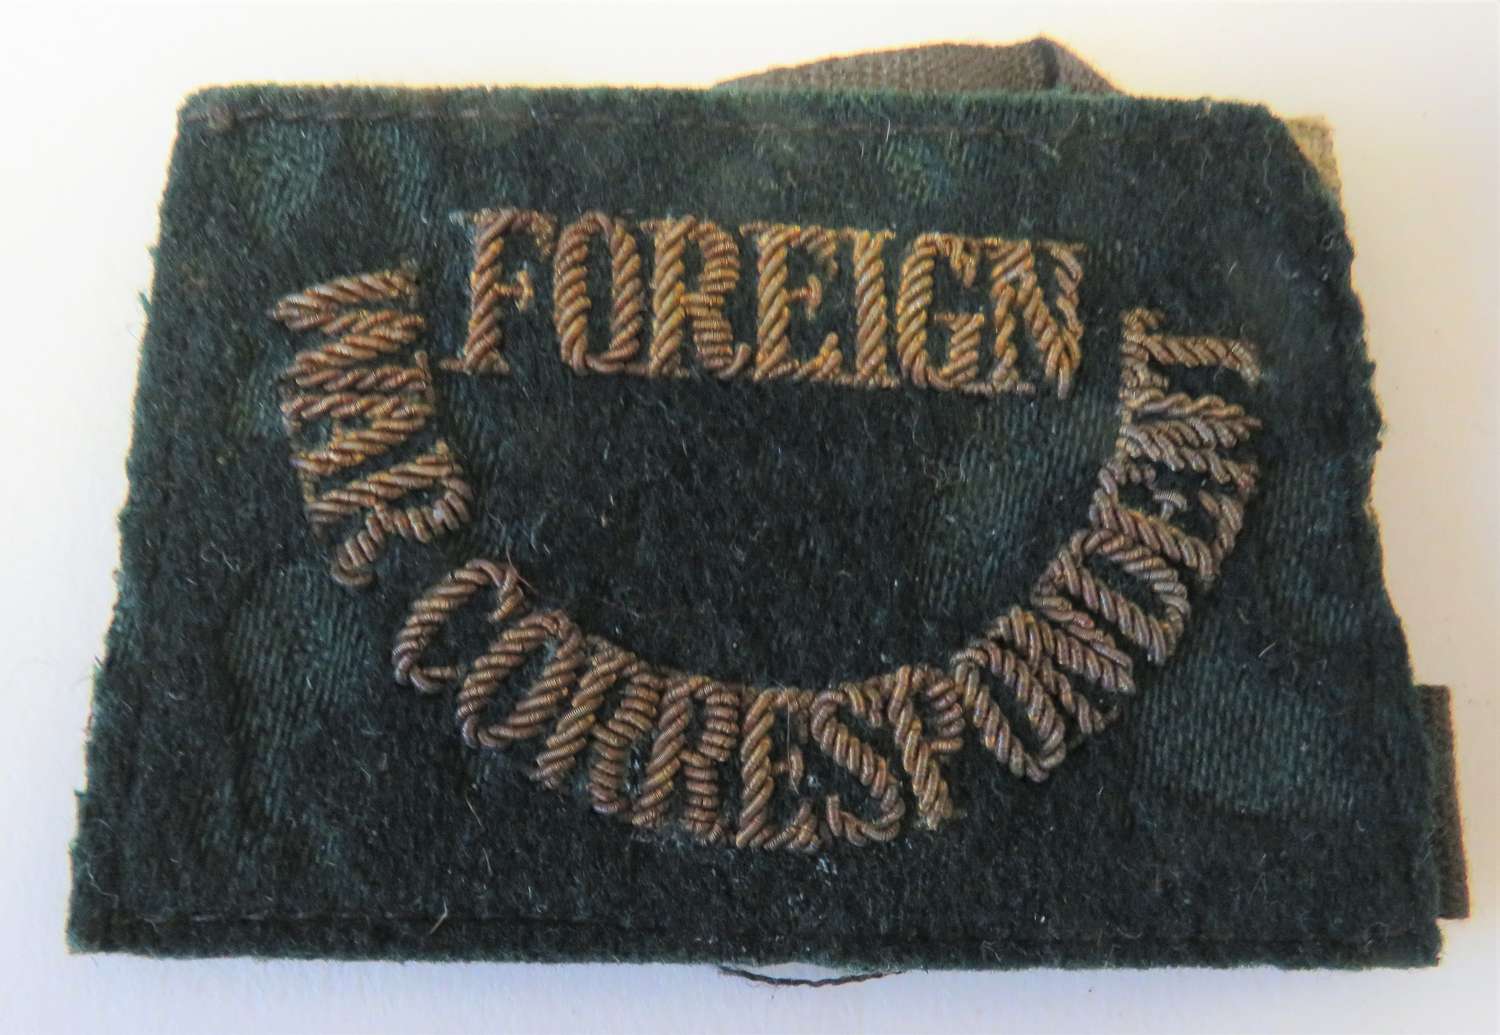 WW2 Foreign War Correspondent Slip on Shoulder Title